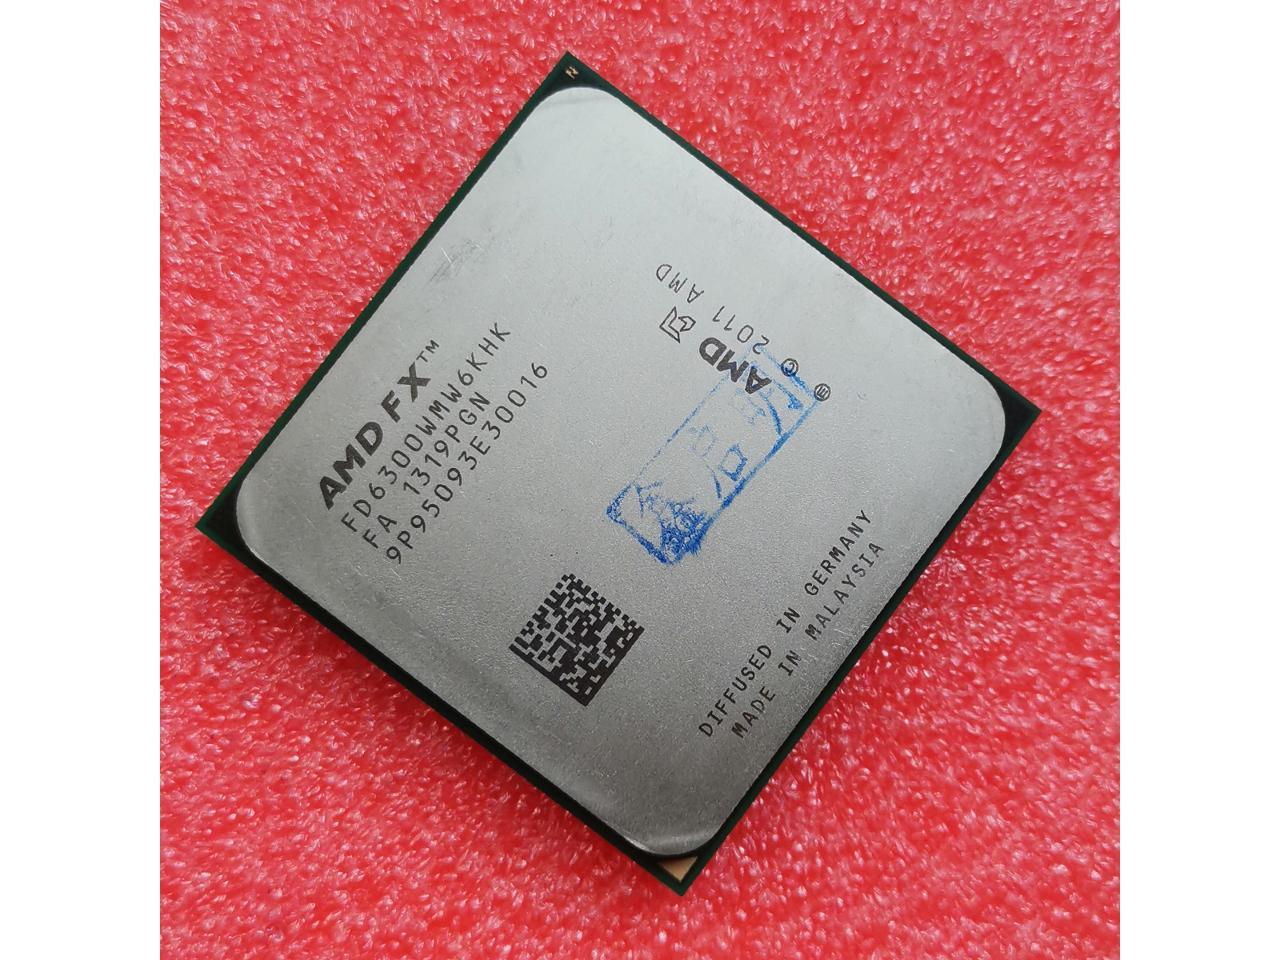 Amd Fx 6300 3 5 Ghz Desktop Processor Newegg Com